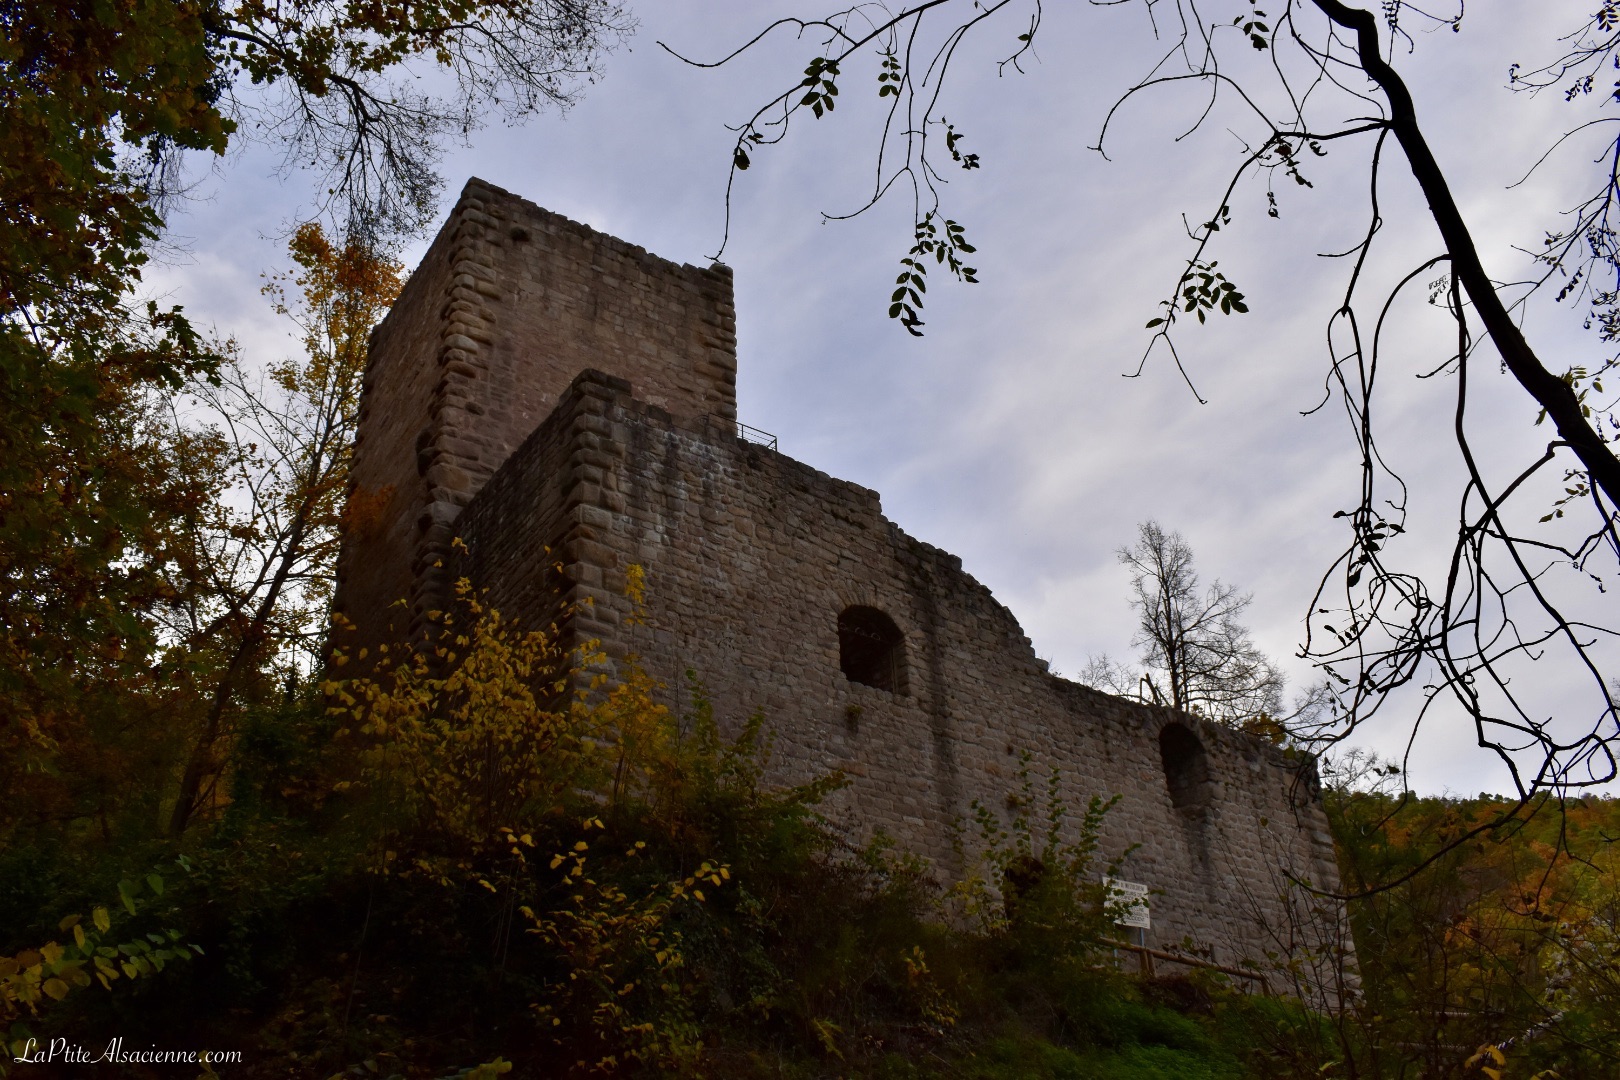 Ruine du Château le Hagueneck à 420m d'altitude - Photo de Cendrine Miesch dite LaPtiteAlsacienne